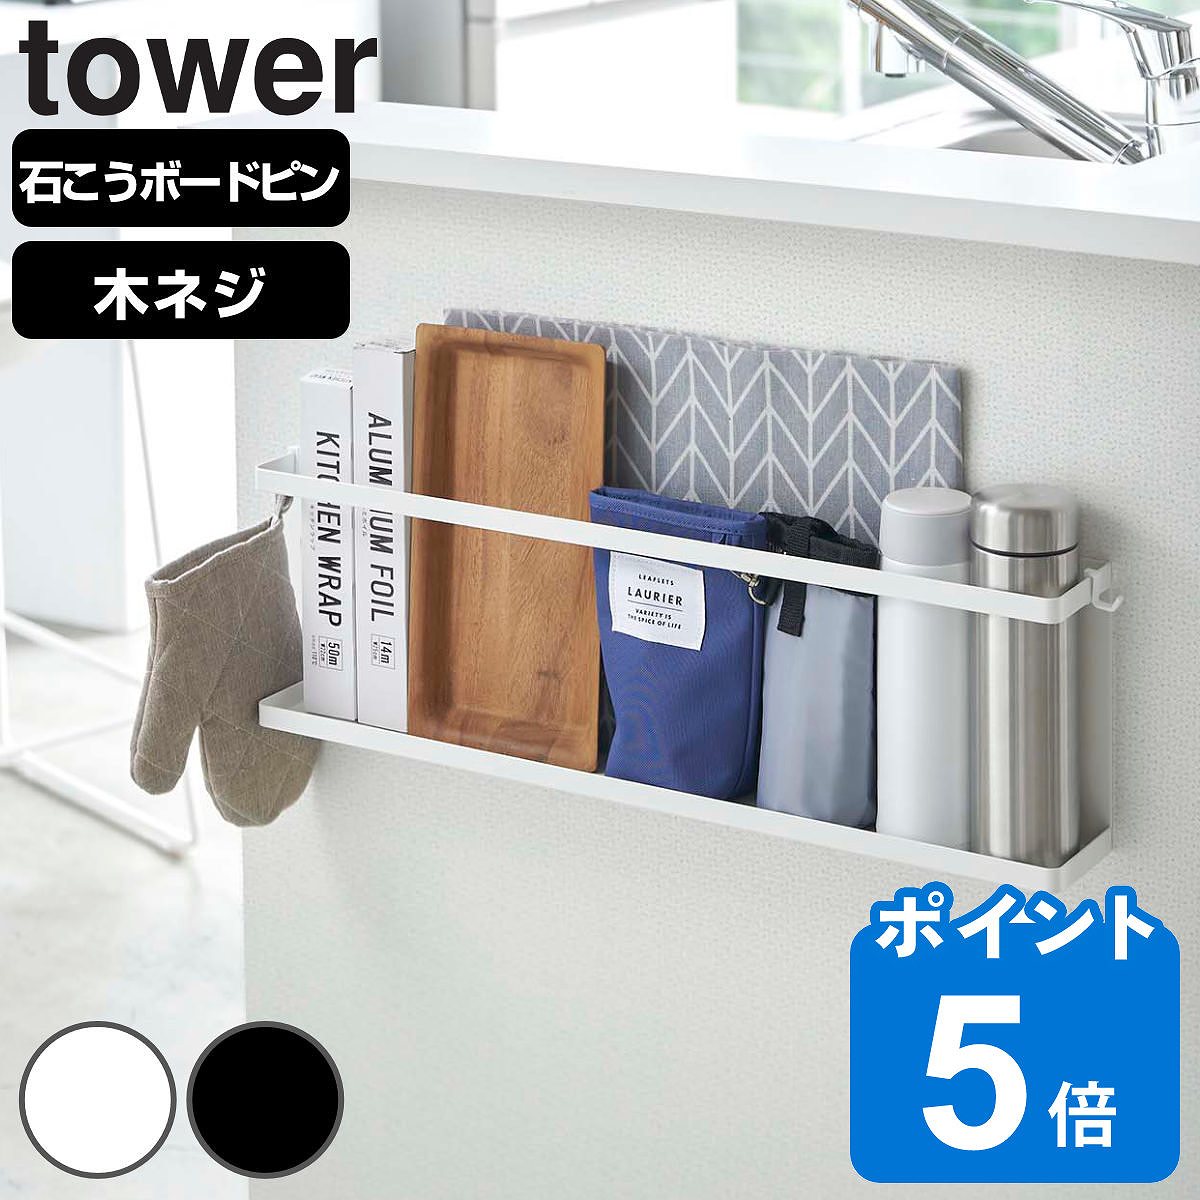 山崎実業 tower キッチンカウンター横収納ラック タワー